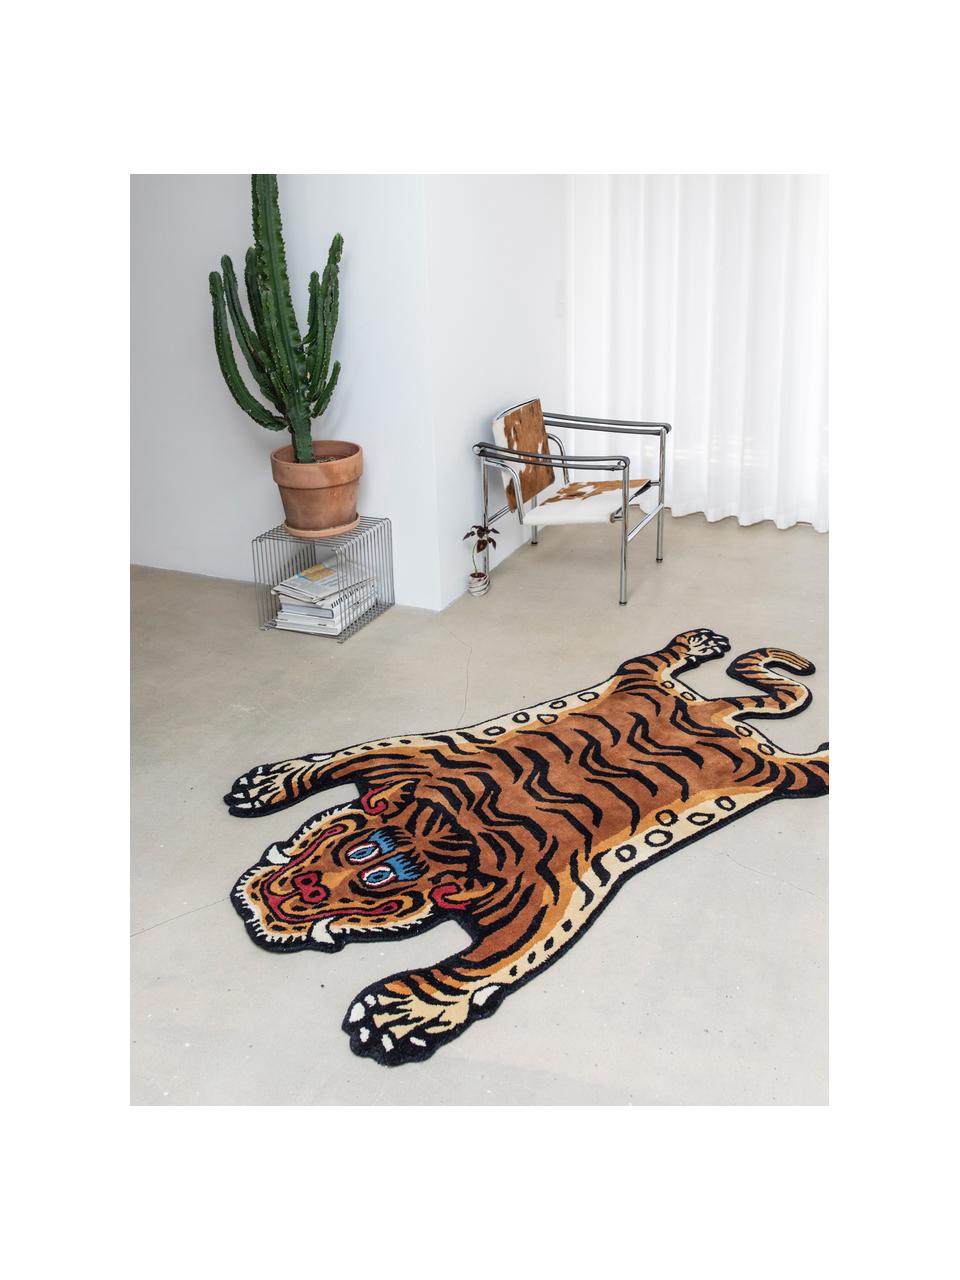 Ručne tuftovaný vlnený koberec Tiger, 100 % vlna

V prvých týždňoch používania môžu vlnené koberce uvoľňovať vlákna, tento jav zmizne po niekoľkých týždňoch používania, Hnedá, čierna, Š 70 x D 125 cm (veľkosť XS)